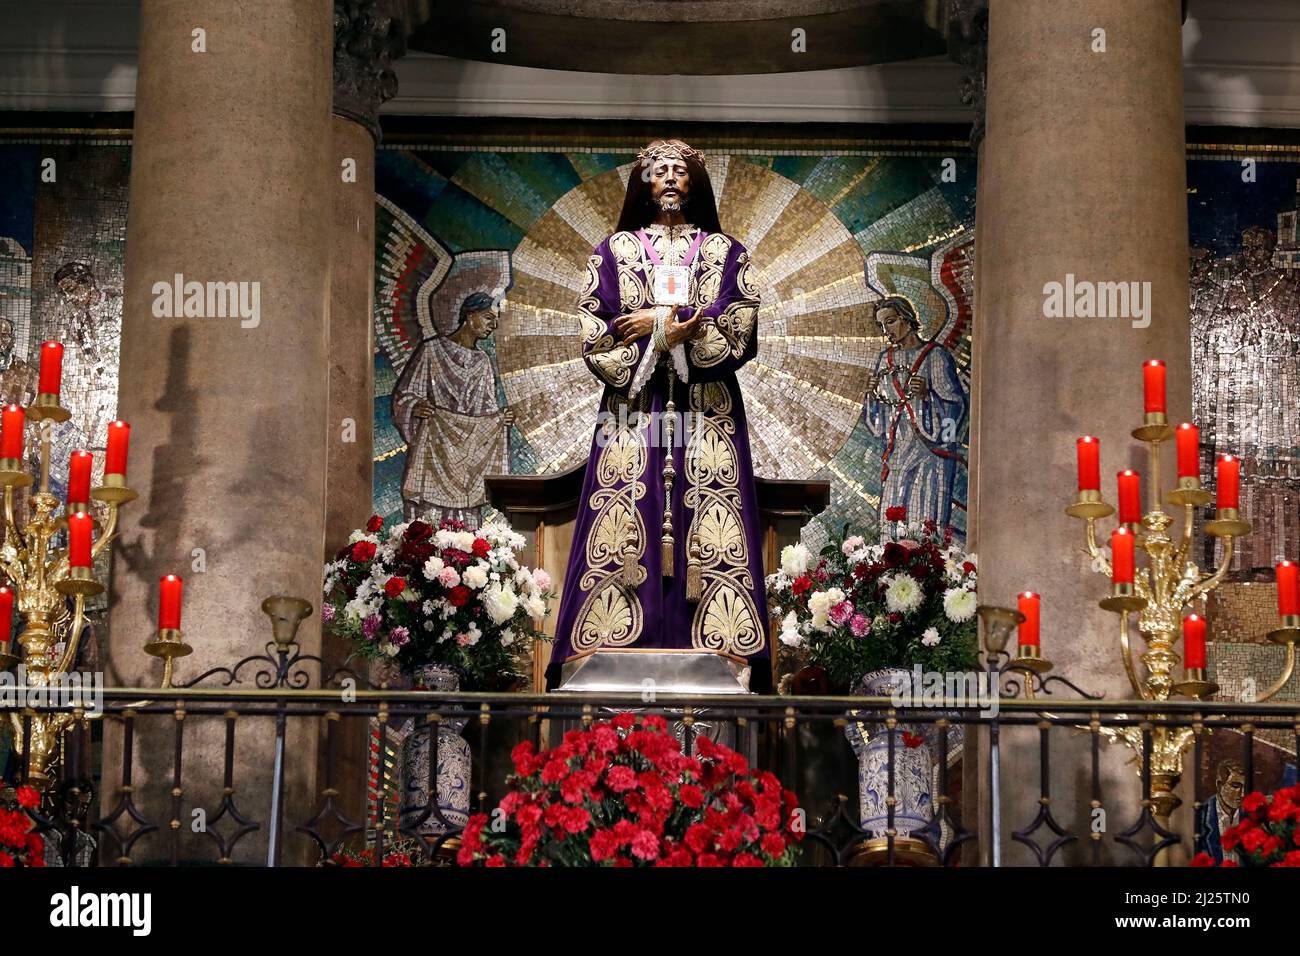 Basilica of Jesus de Medinaceli. Jesus Christ statue. Stock Photo